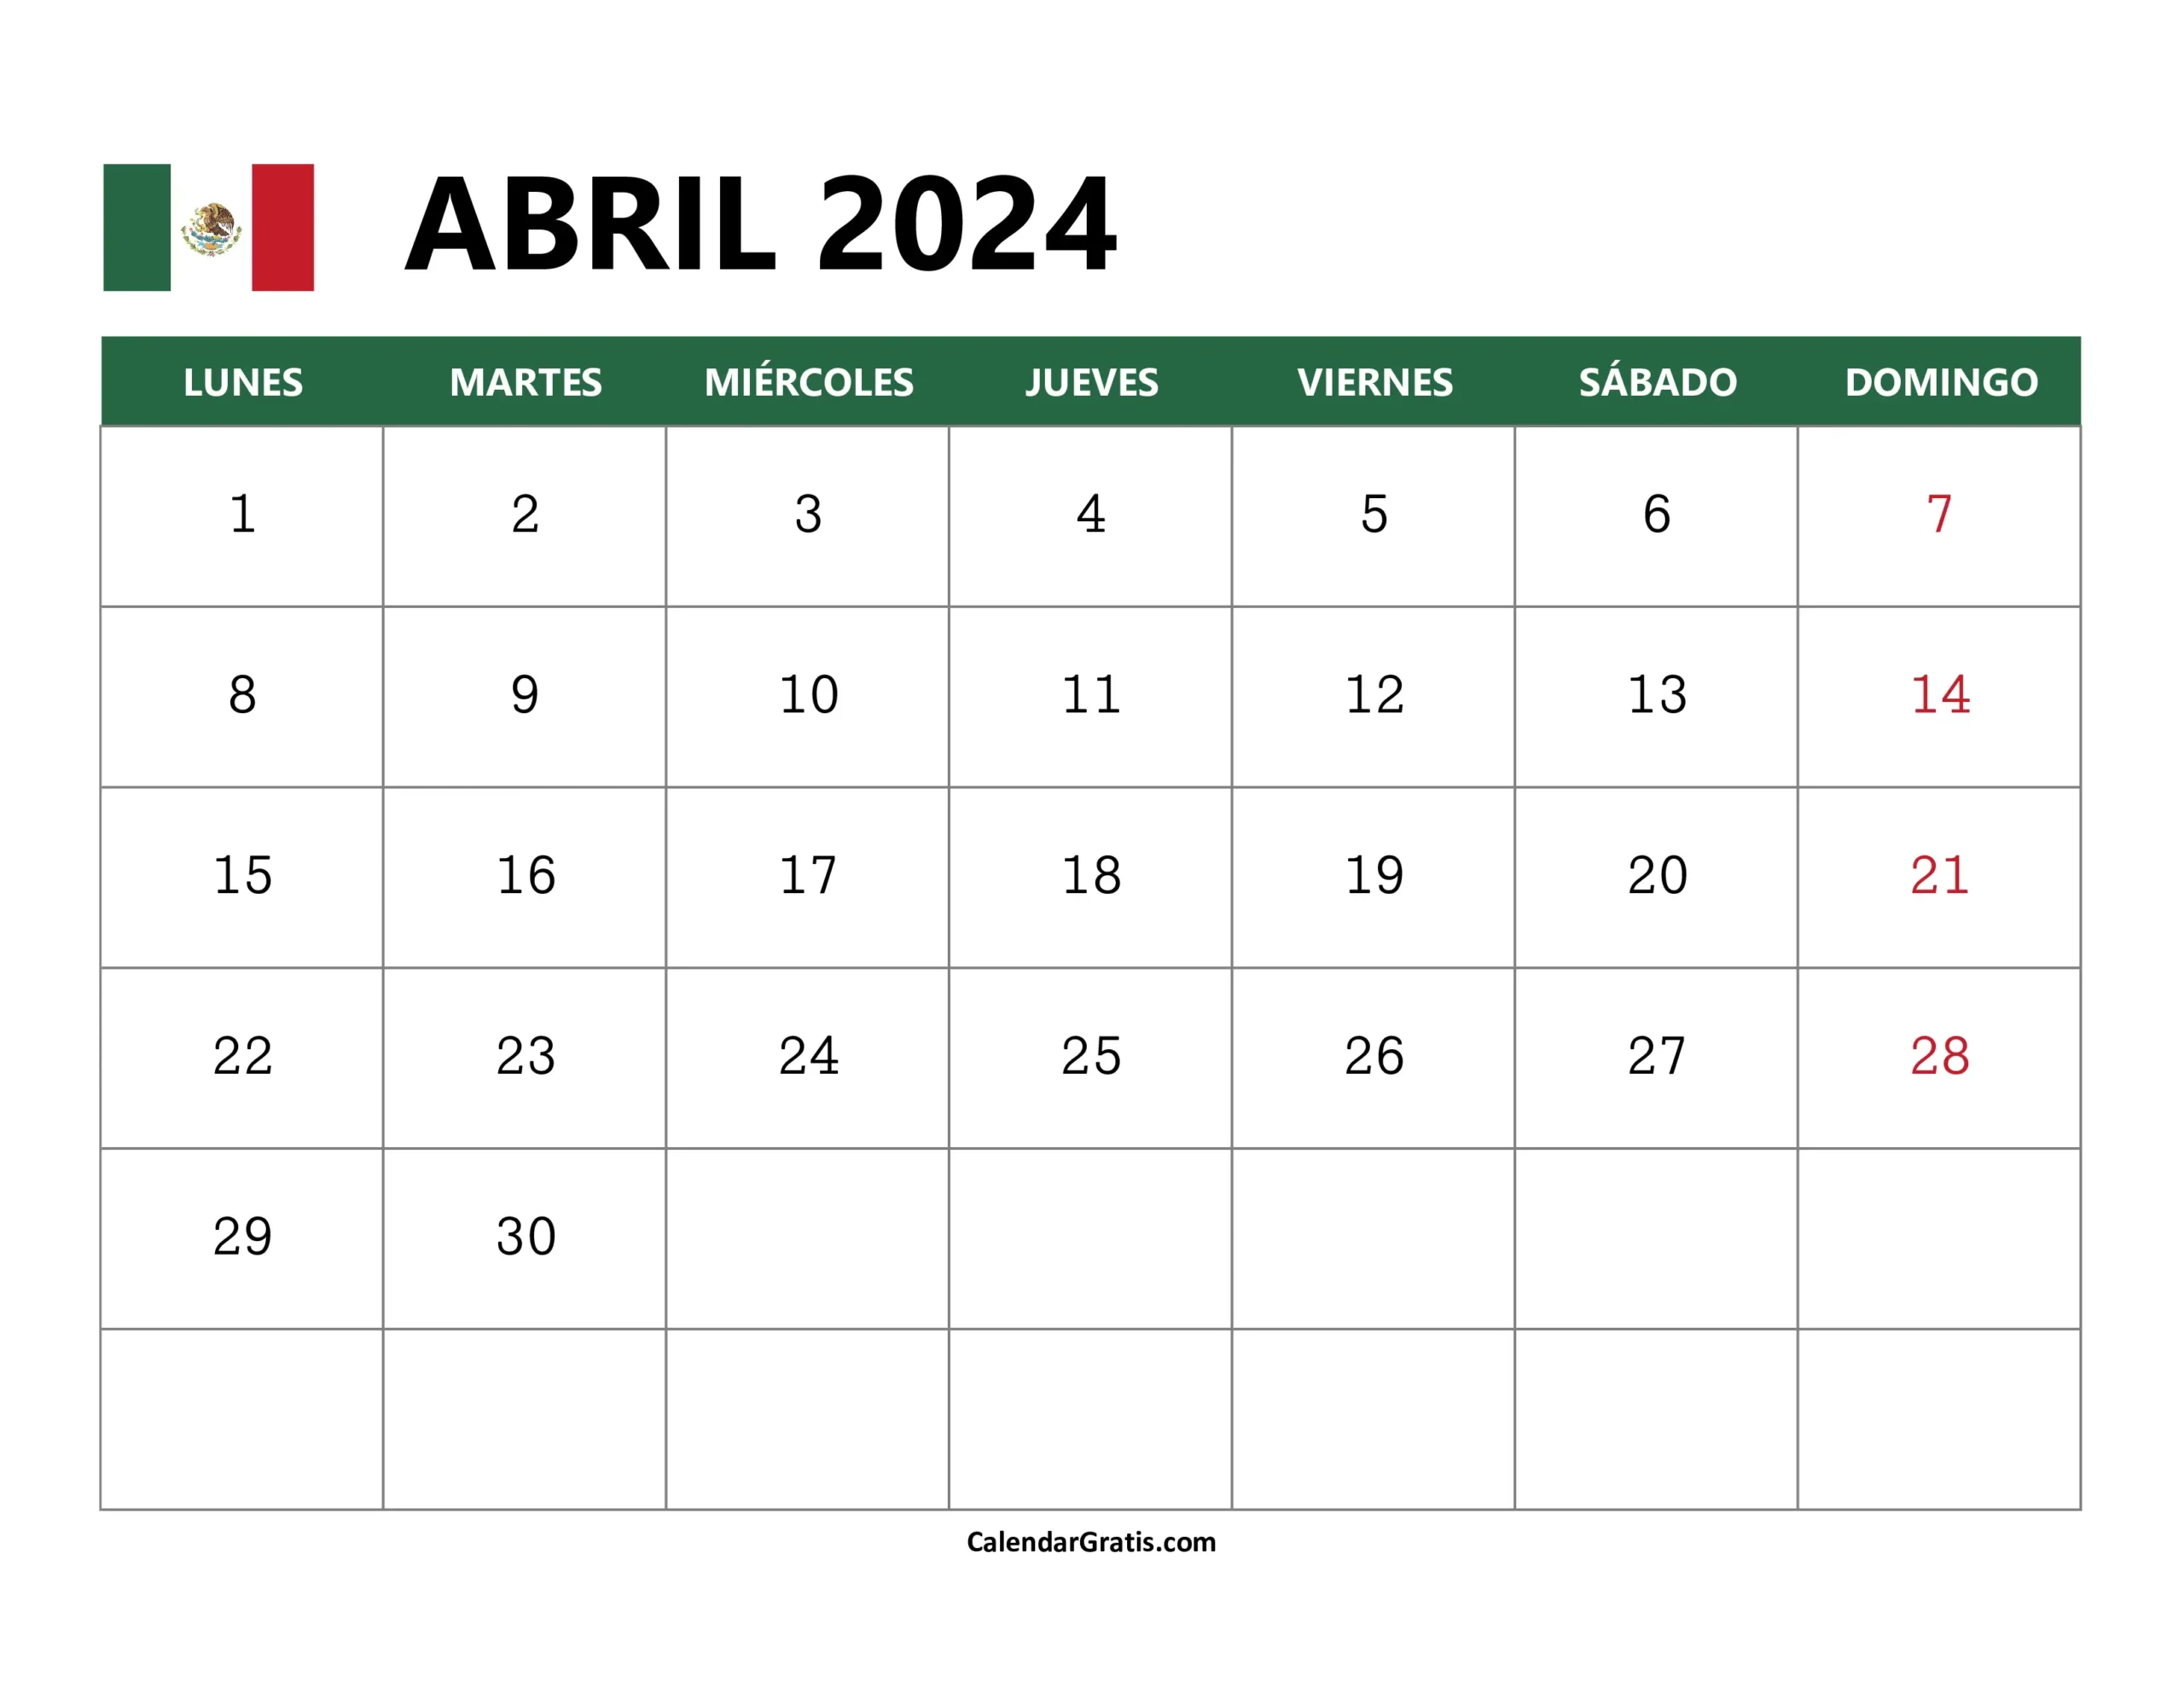 Calendario México Abril 2024 para imprimir gratis con la bandera mexicana, marcando las fechas del domingo en rojo para indicar días festivos.